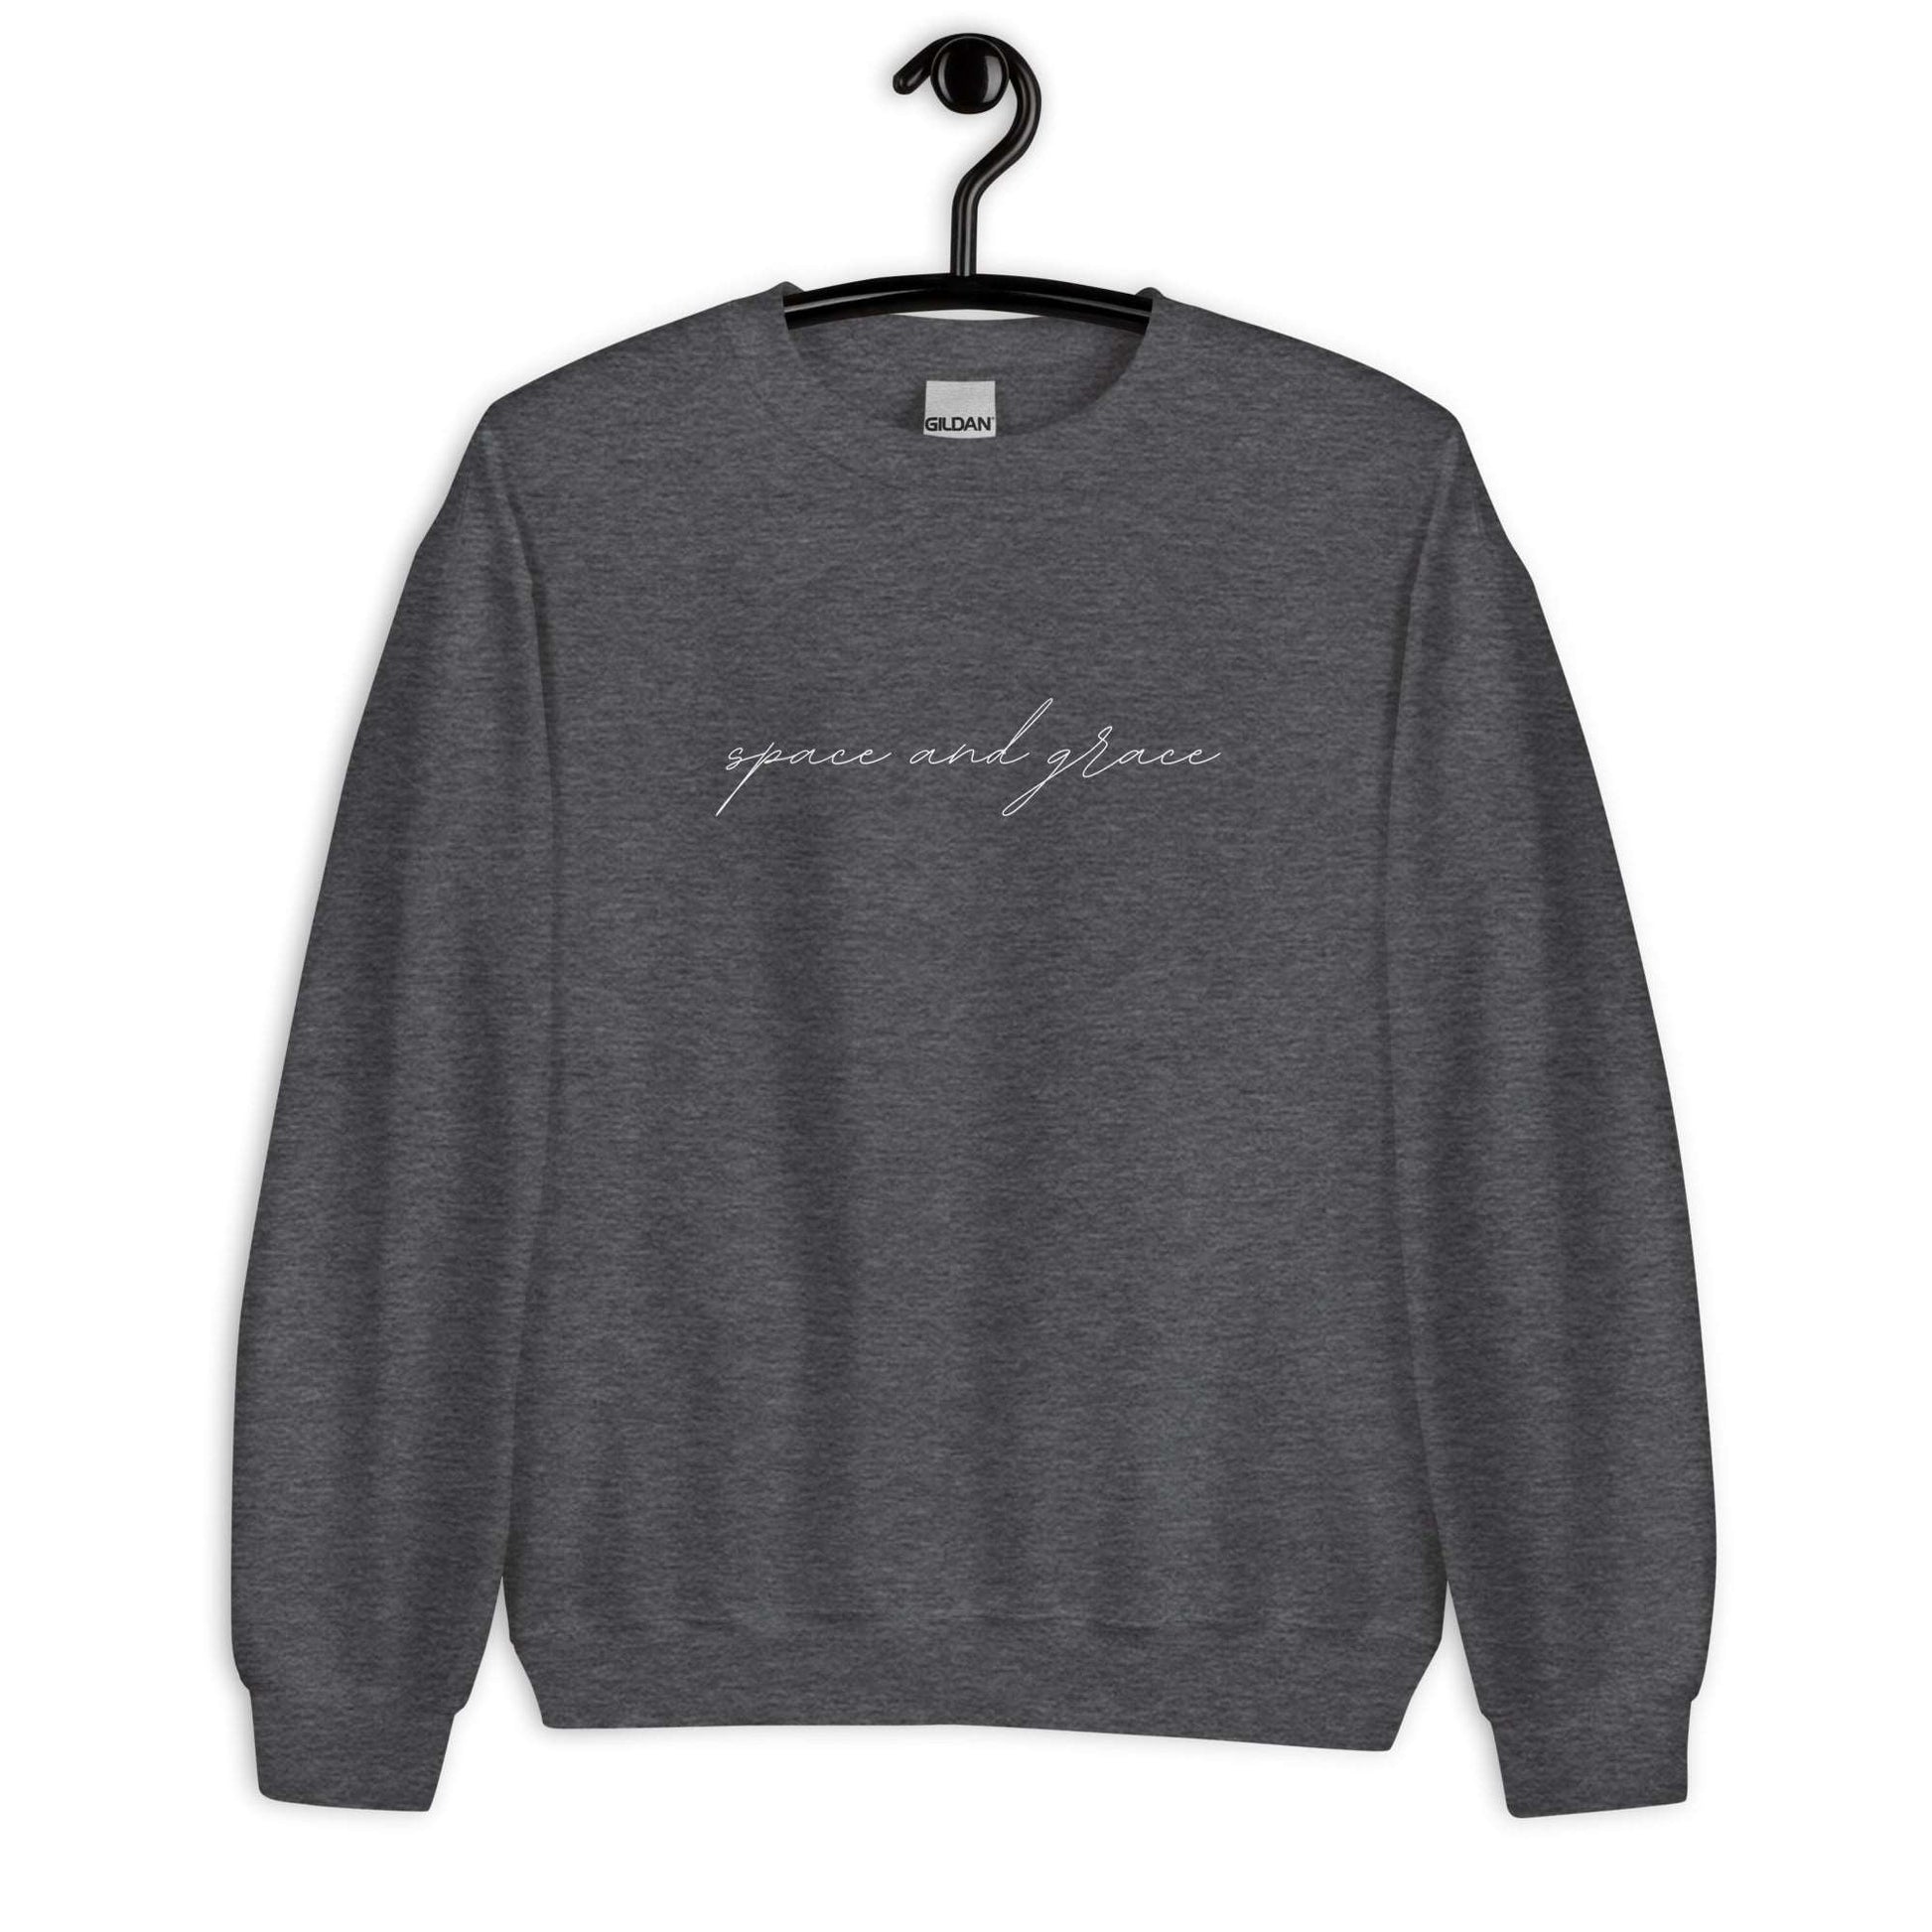 Space & Grace Sweatshirt